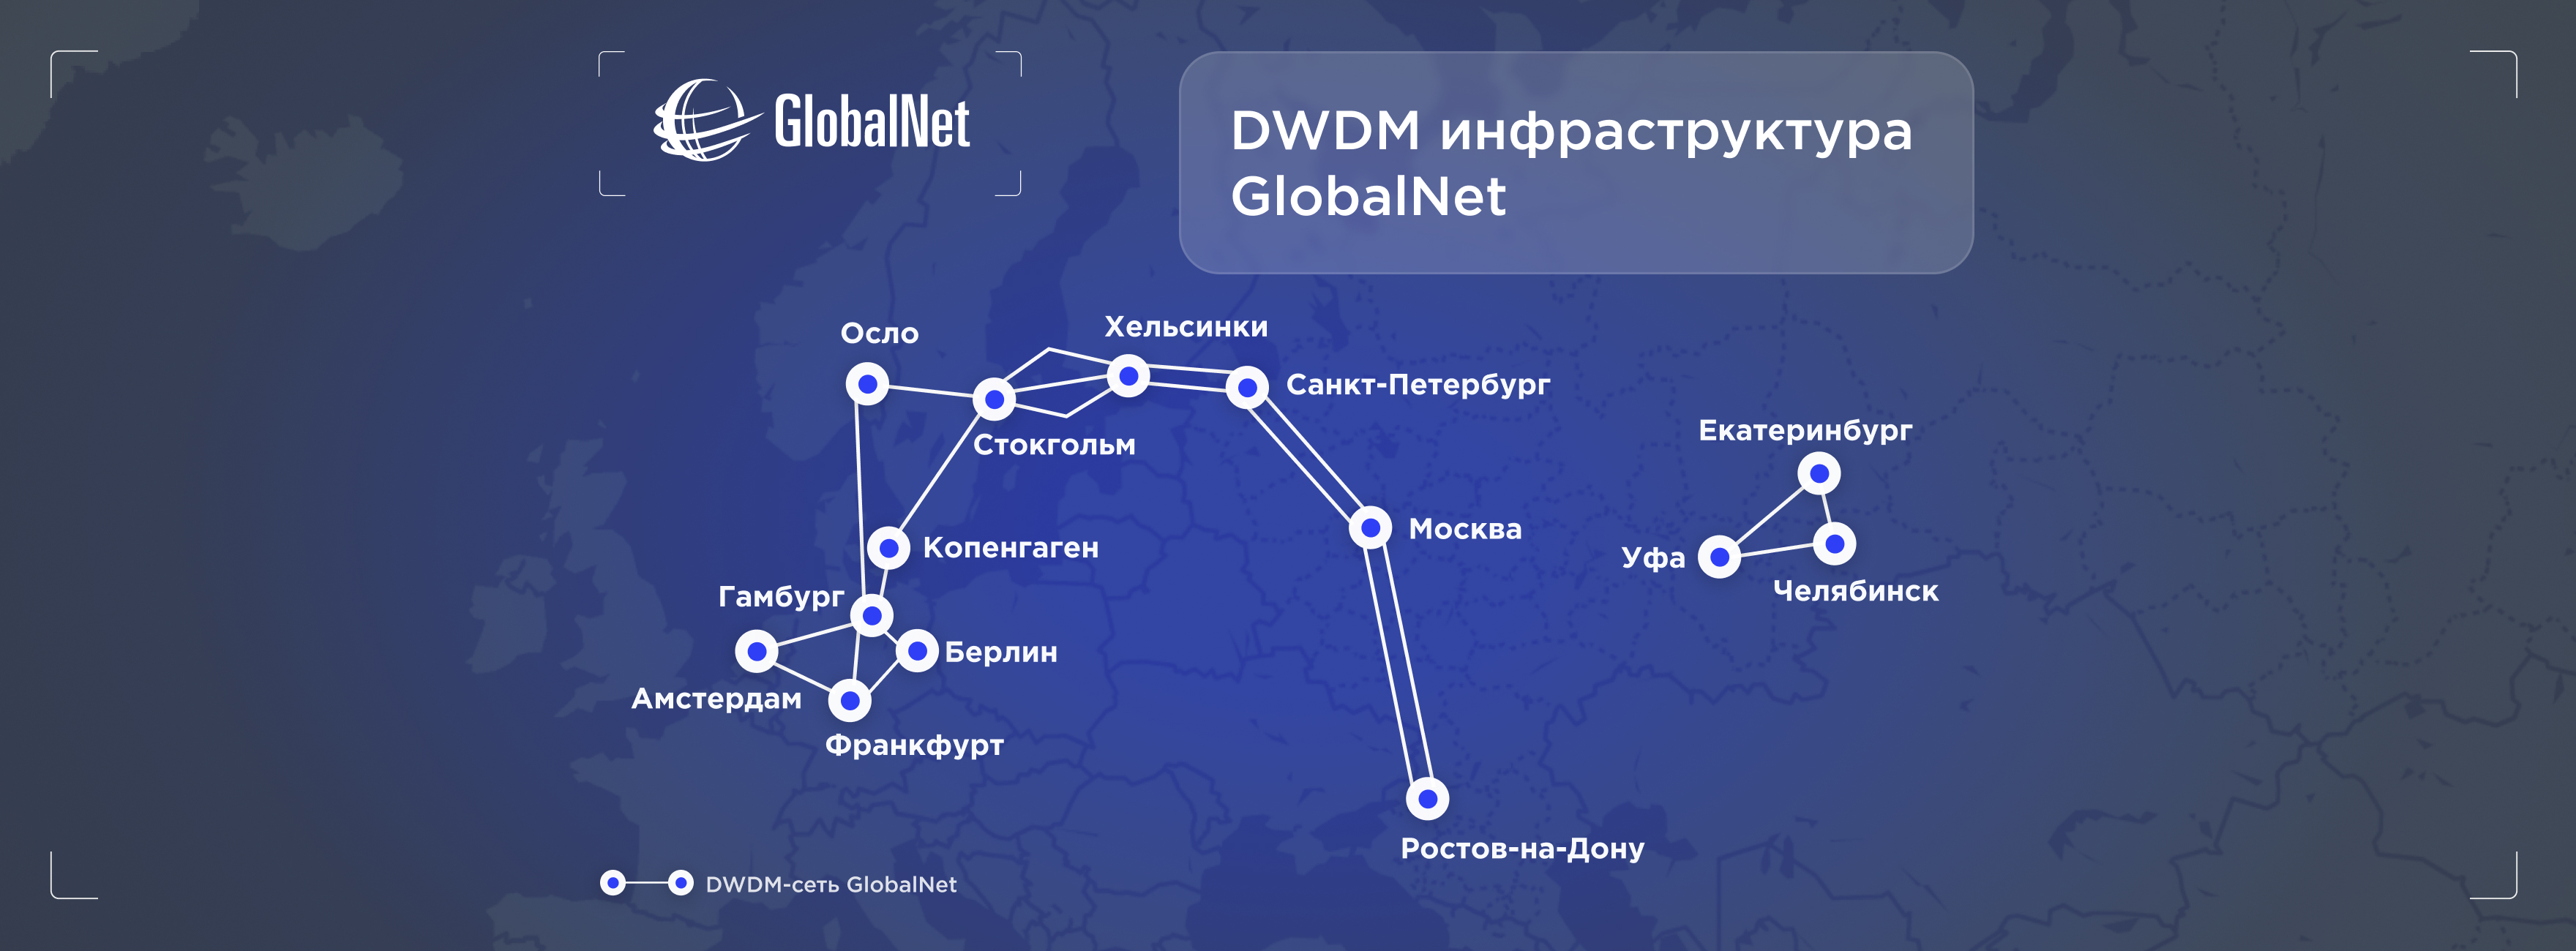 DWDM GlobalNet: универсальное сетевое решение